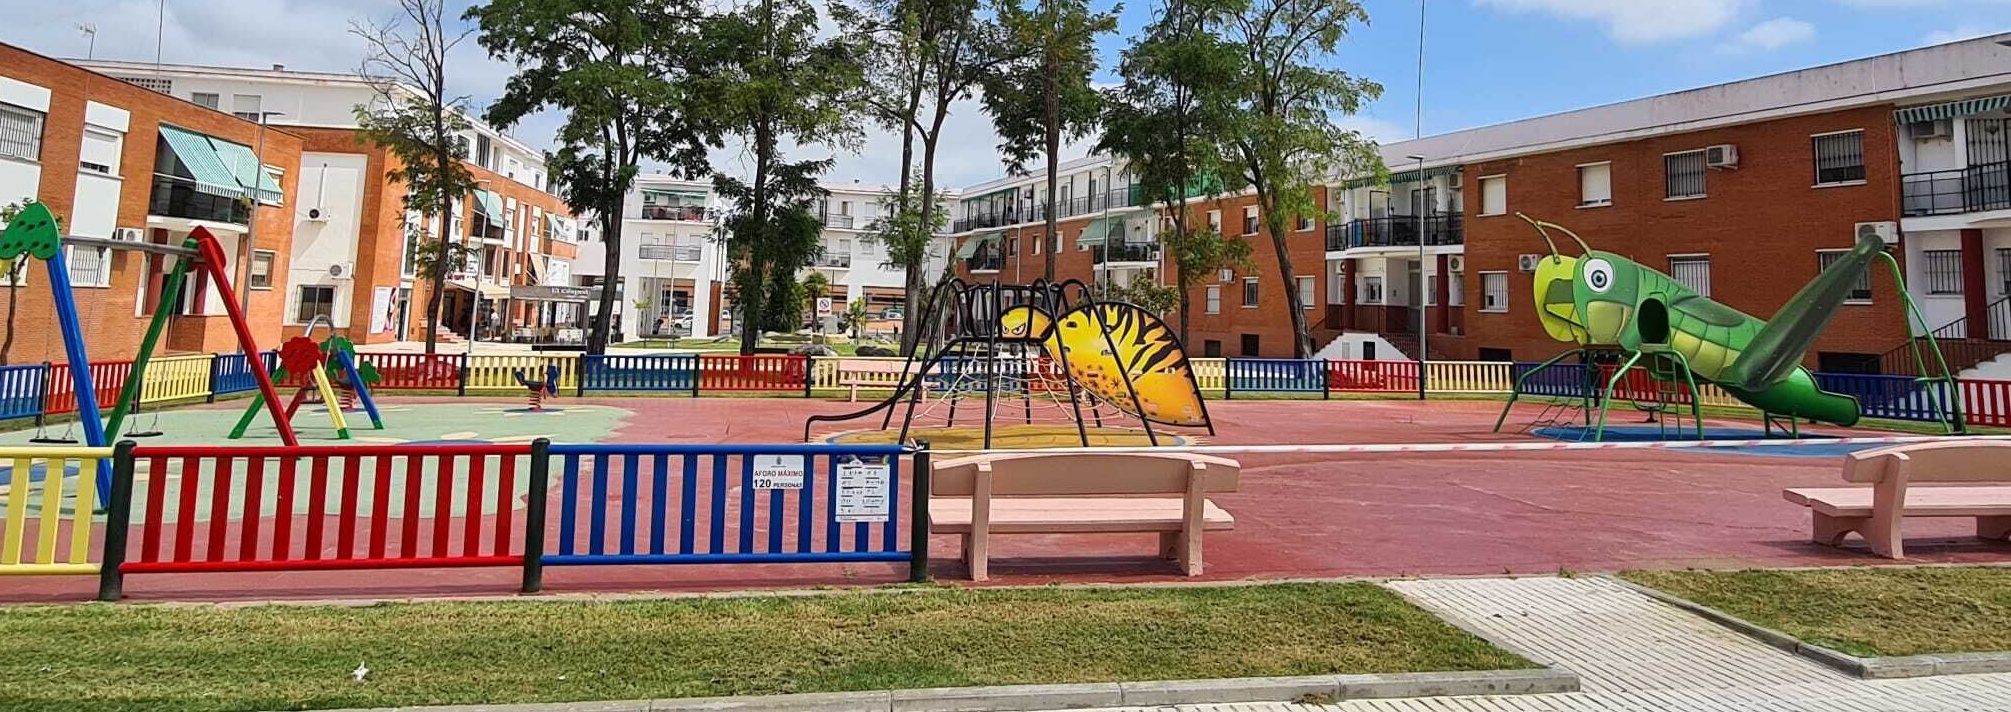 Parques Infantiles junio 2020 - (4)